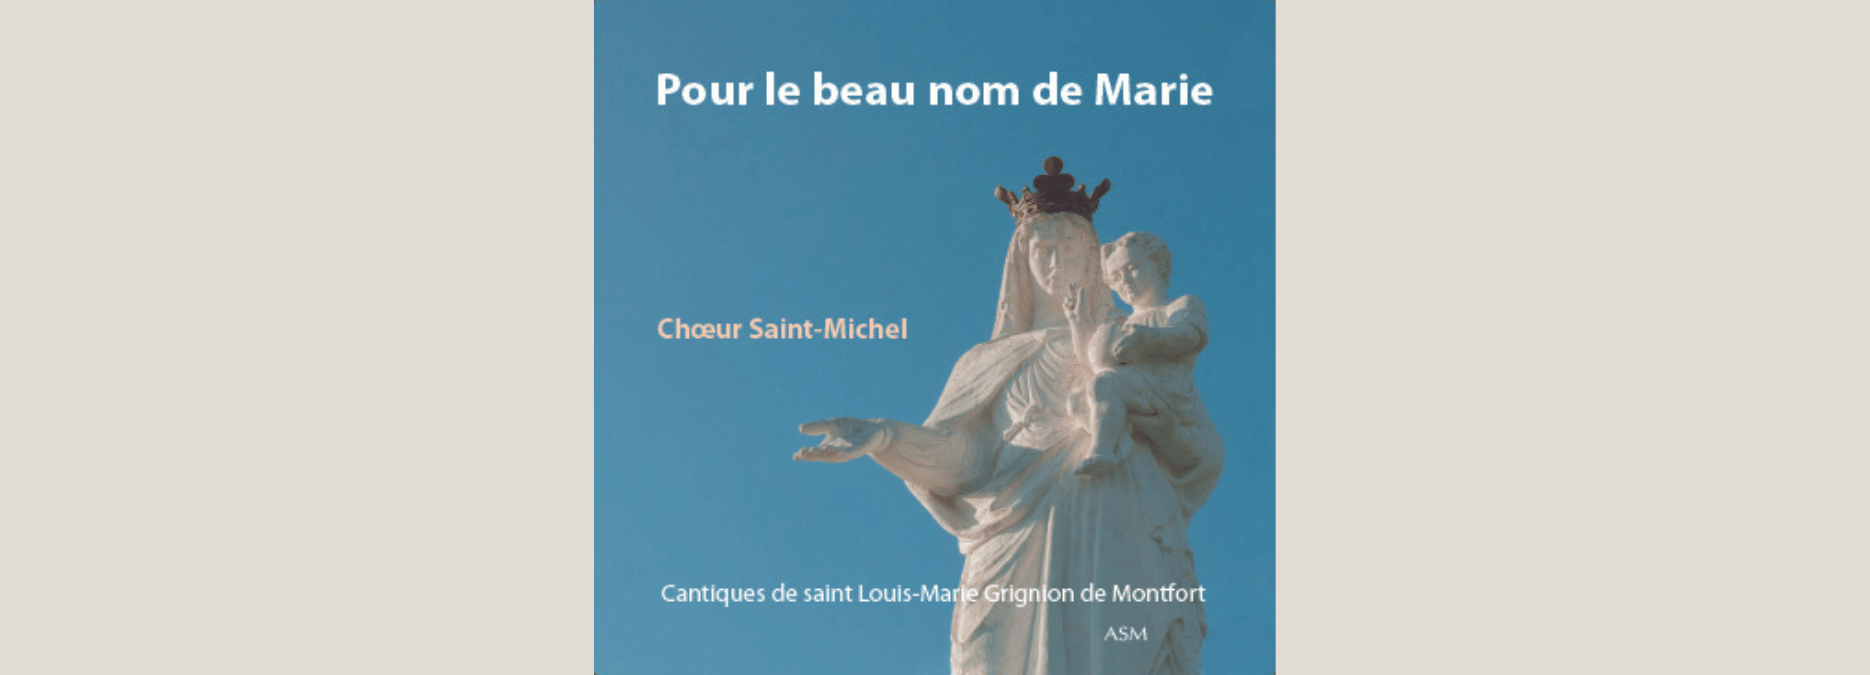 Pour le beau nom de Marie, cantiques de saint Louis-Marie Grignion de Montfort (CD) par le Chœur Saint-Michel